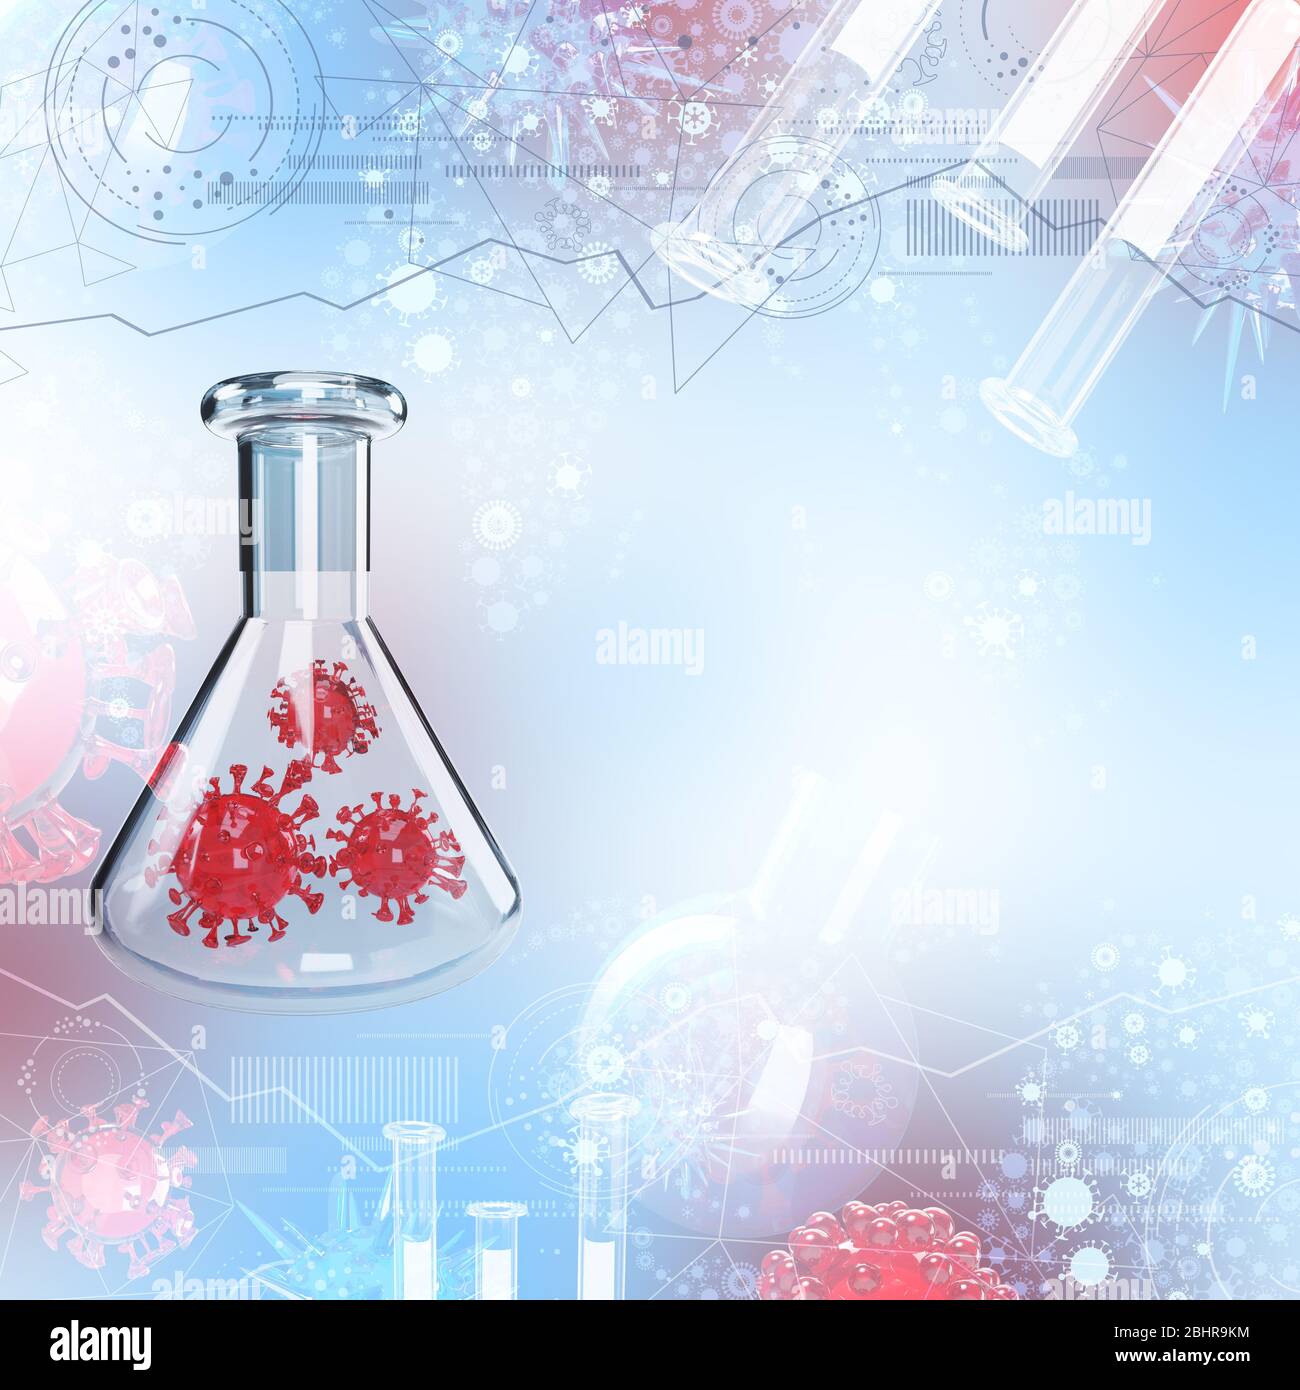 Antivirale Arzneimittelforschung hellblau abstrakte 3d-Illustration Stockfoto